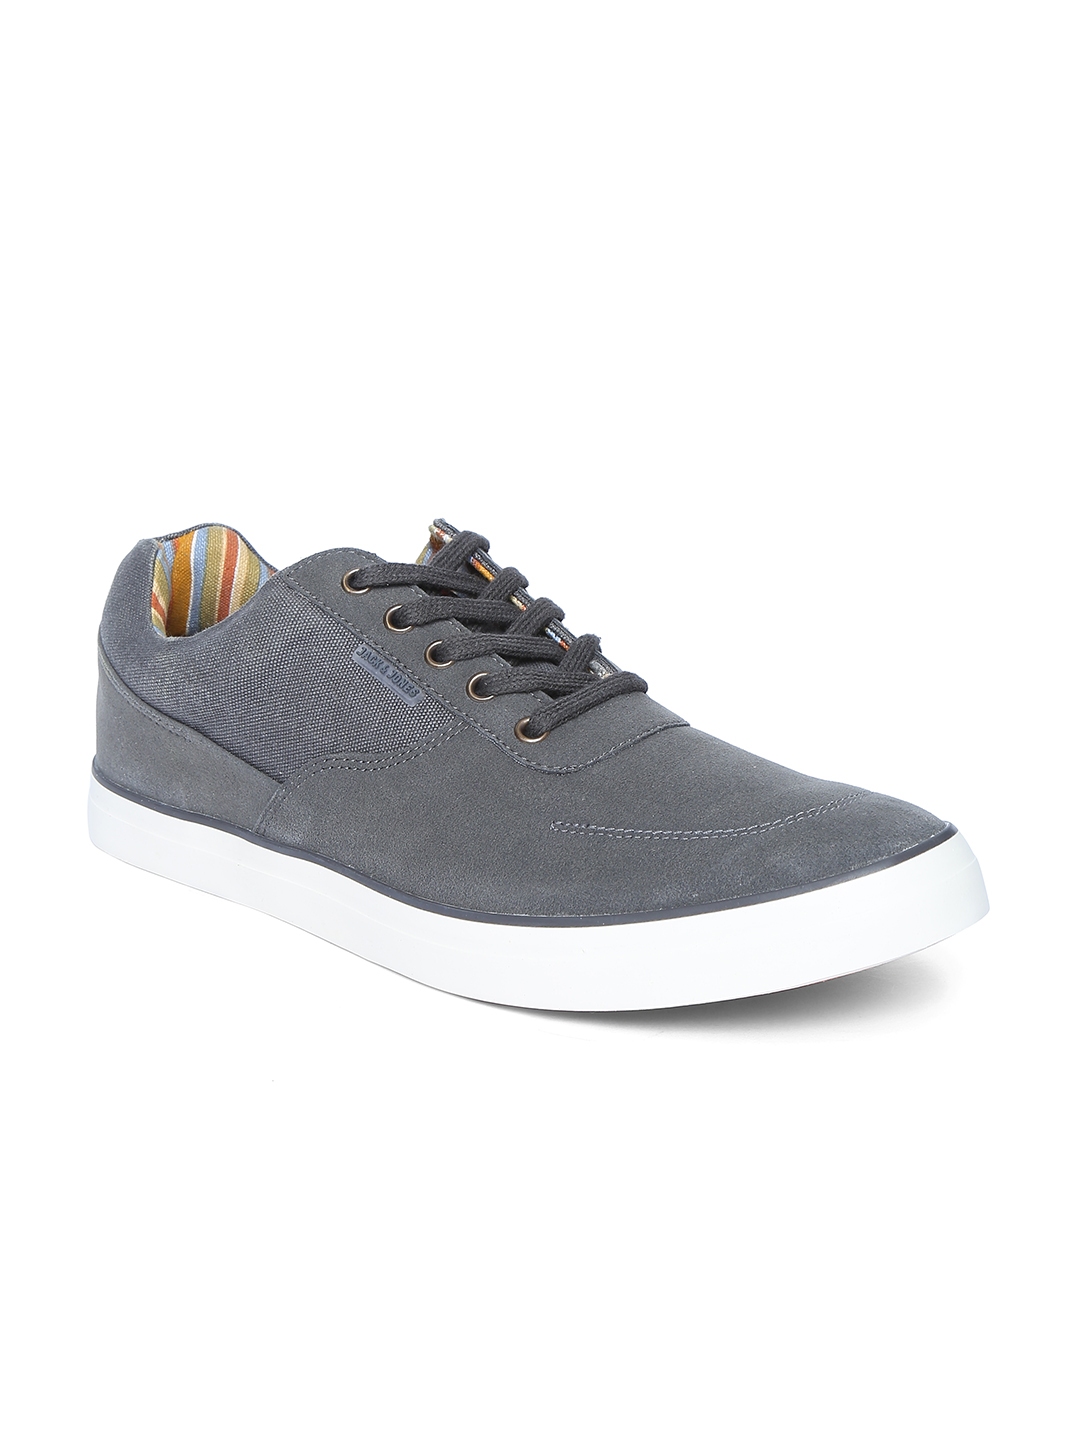 Buy Jack & Jones Men Grey Solid Sneakers - Casual Shoes for Men 1717643 ...